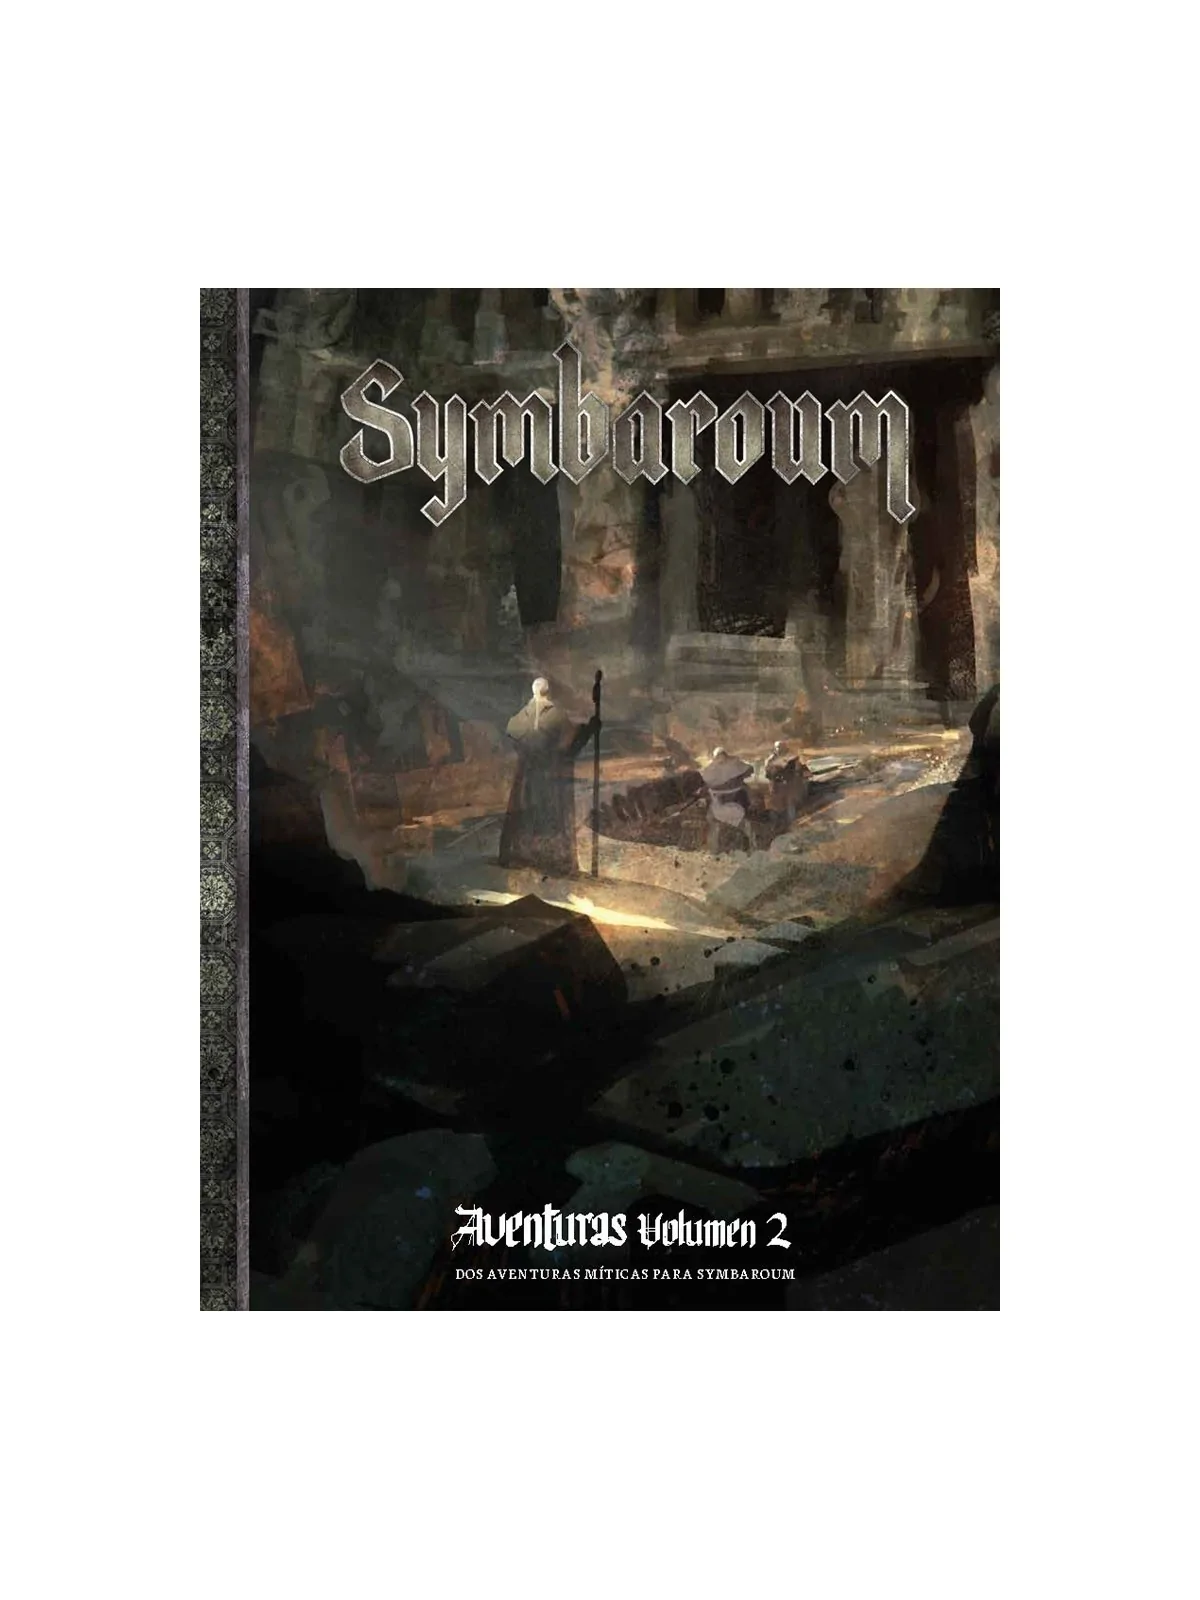 Comprar Symbaroum: Aventuras Volumen 2 barato al mejor precio 17,09 € 